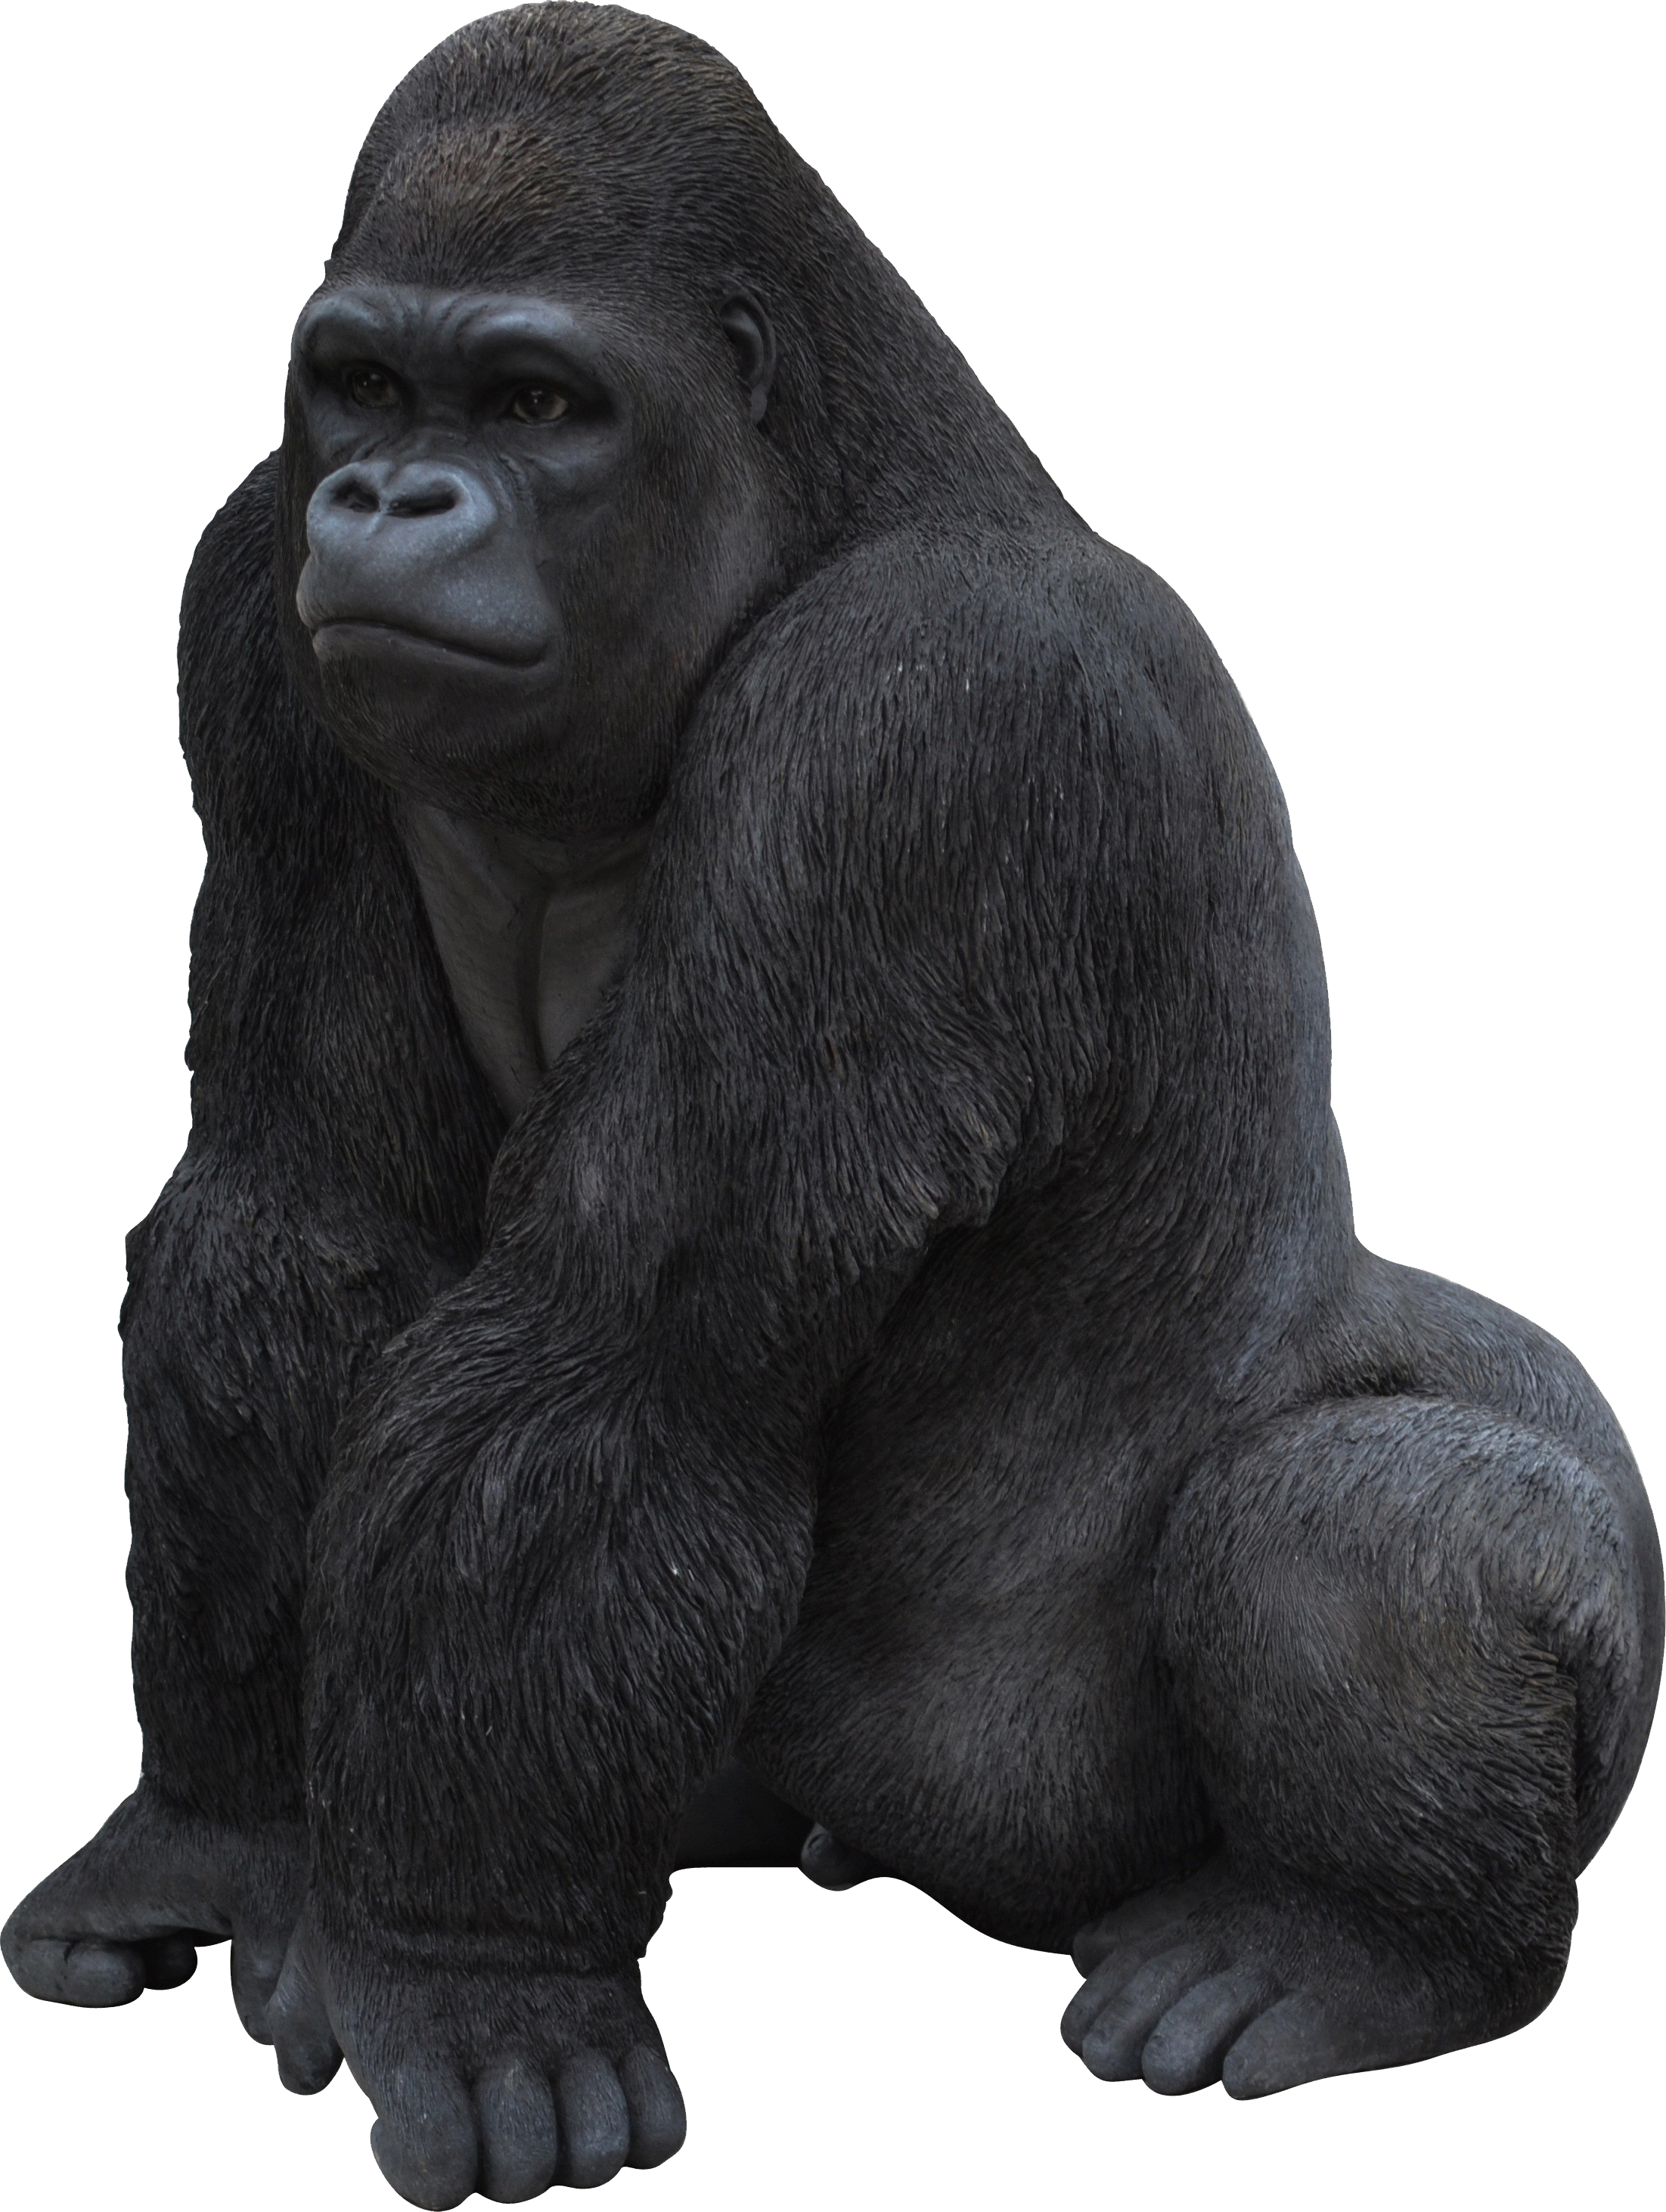 Gorilla PNG Free File Download